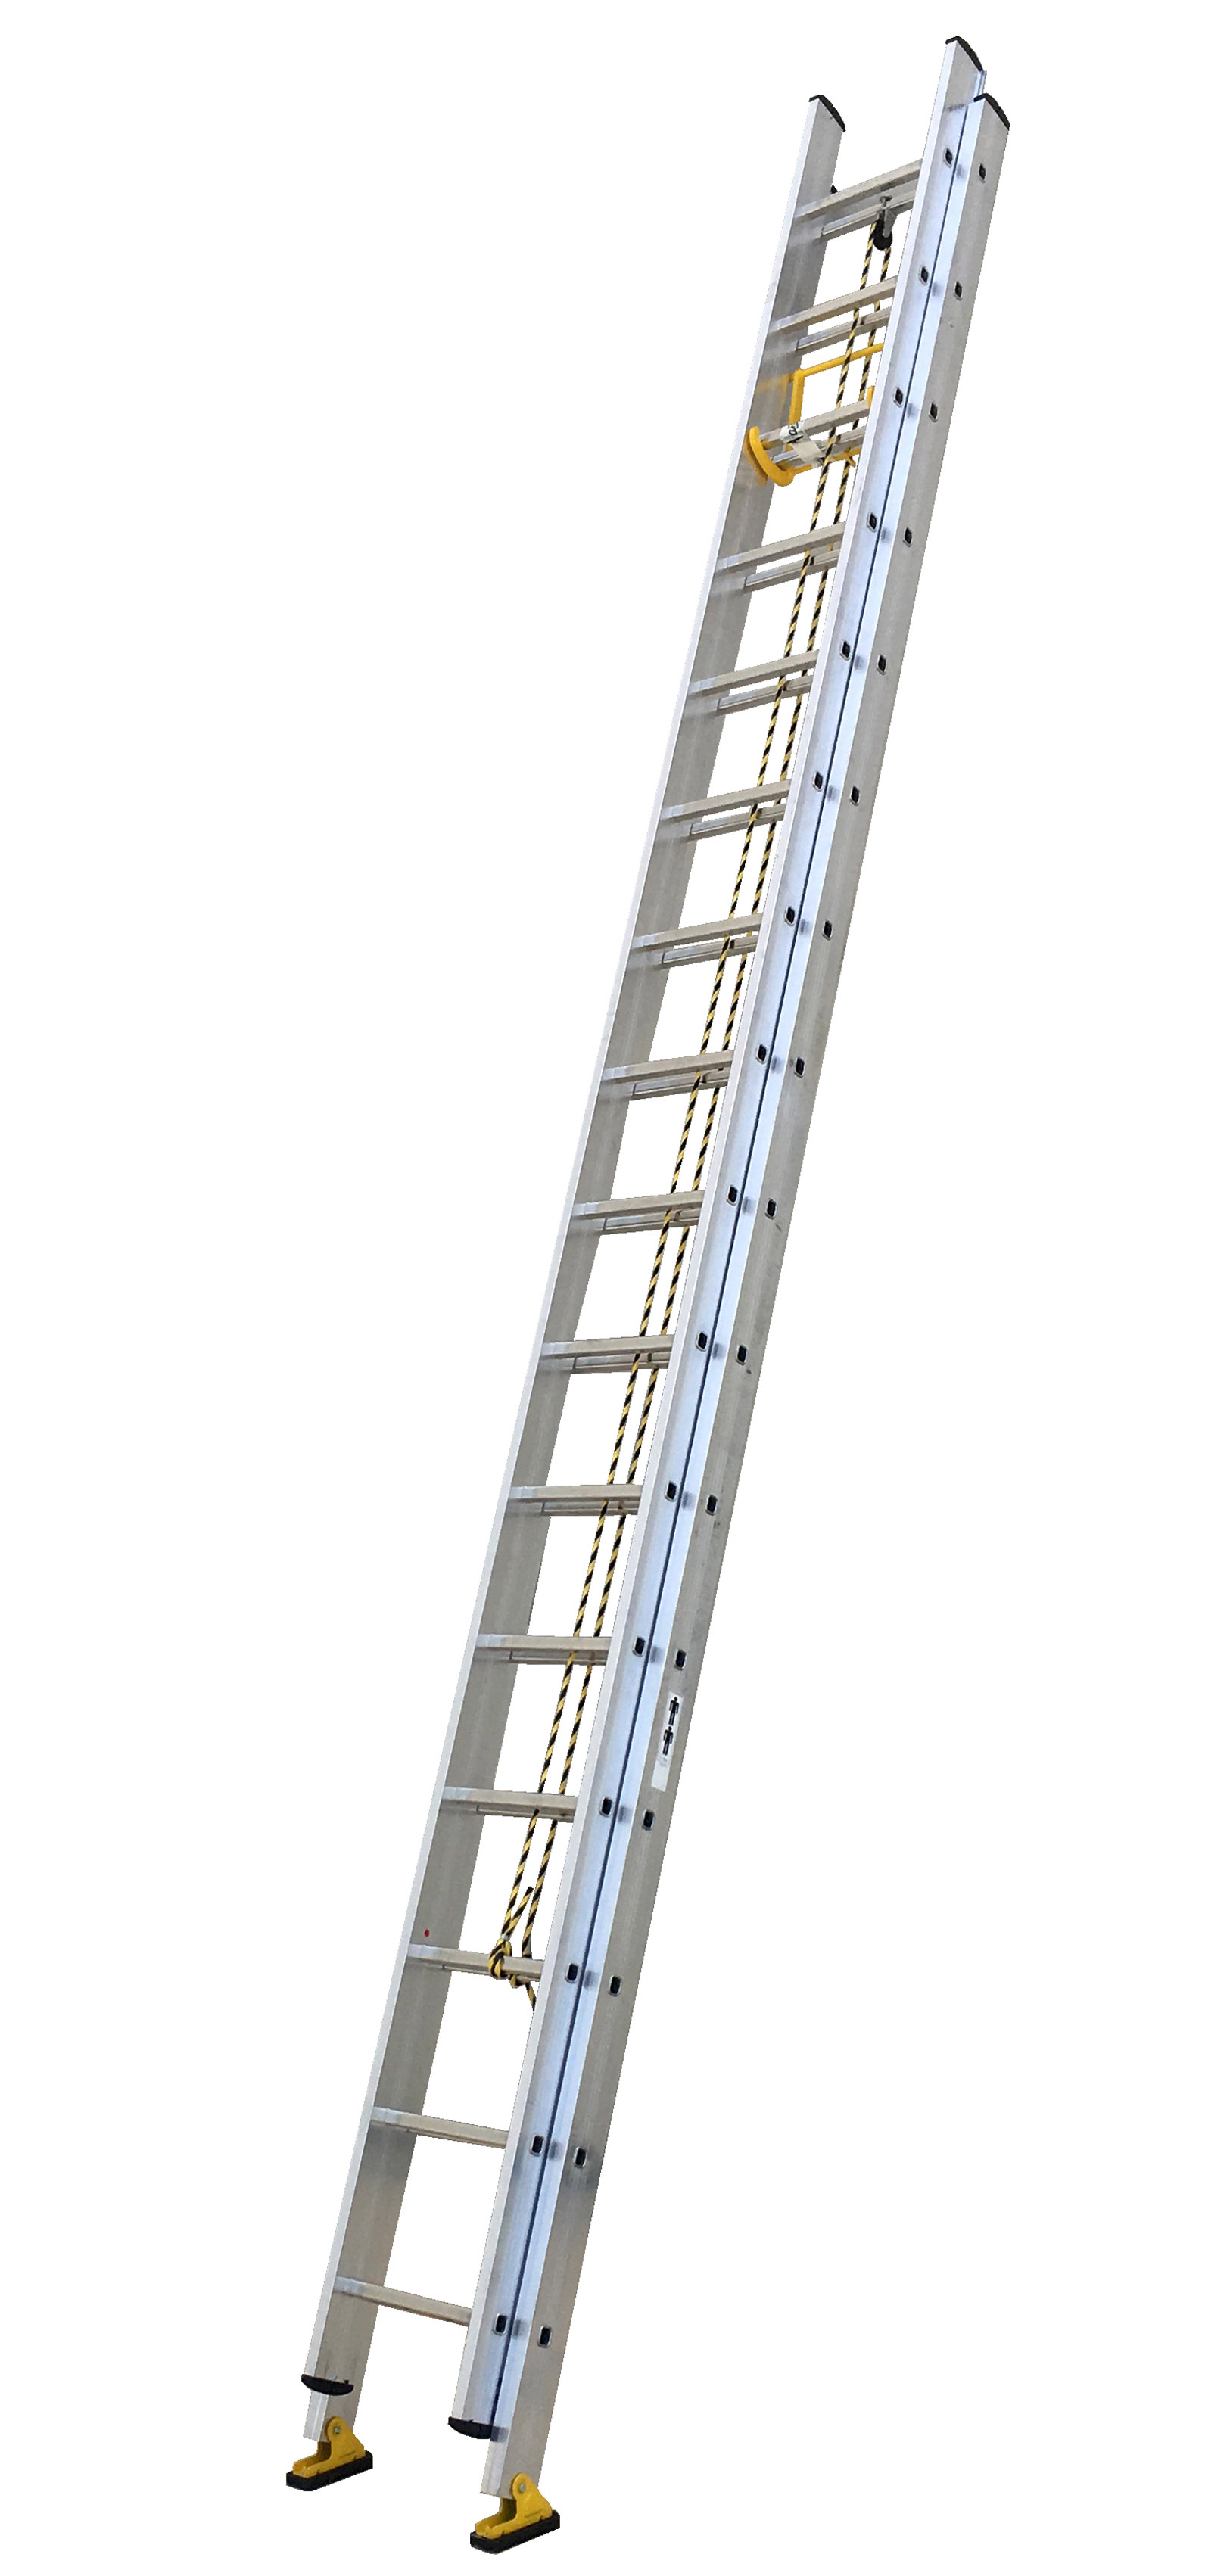 Escalera de aluminio extensible a cuerda para uso en servicio contra incendios